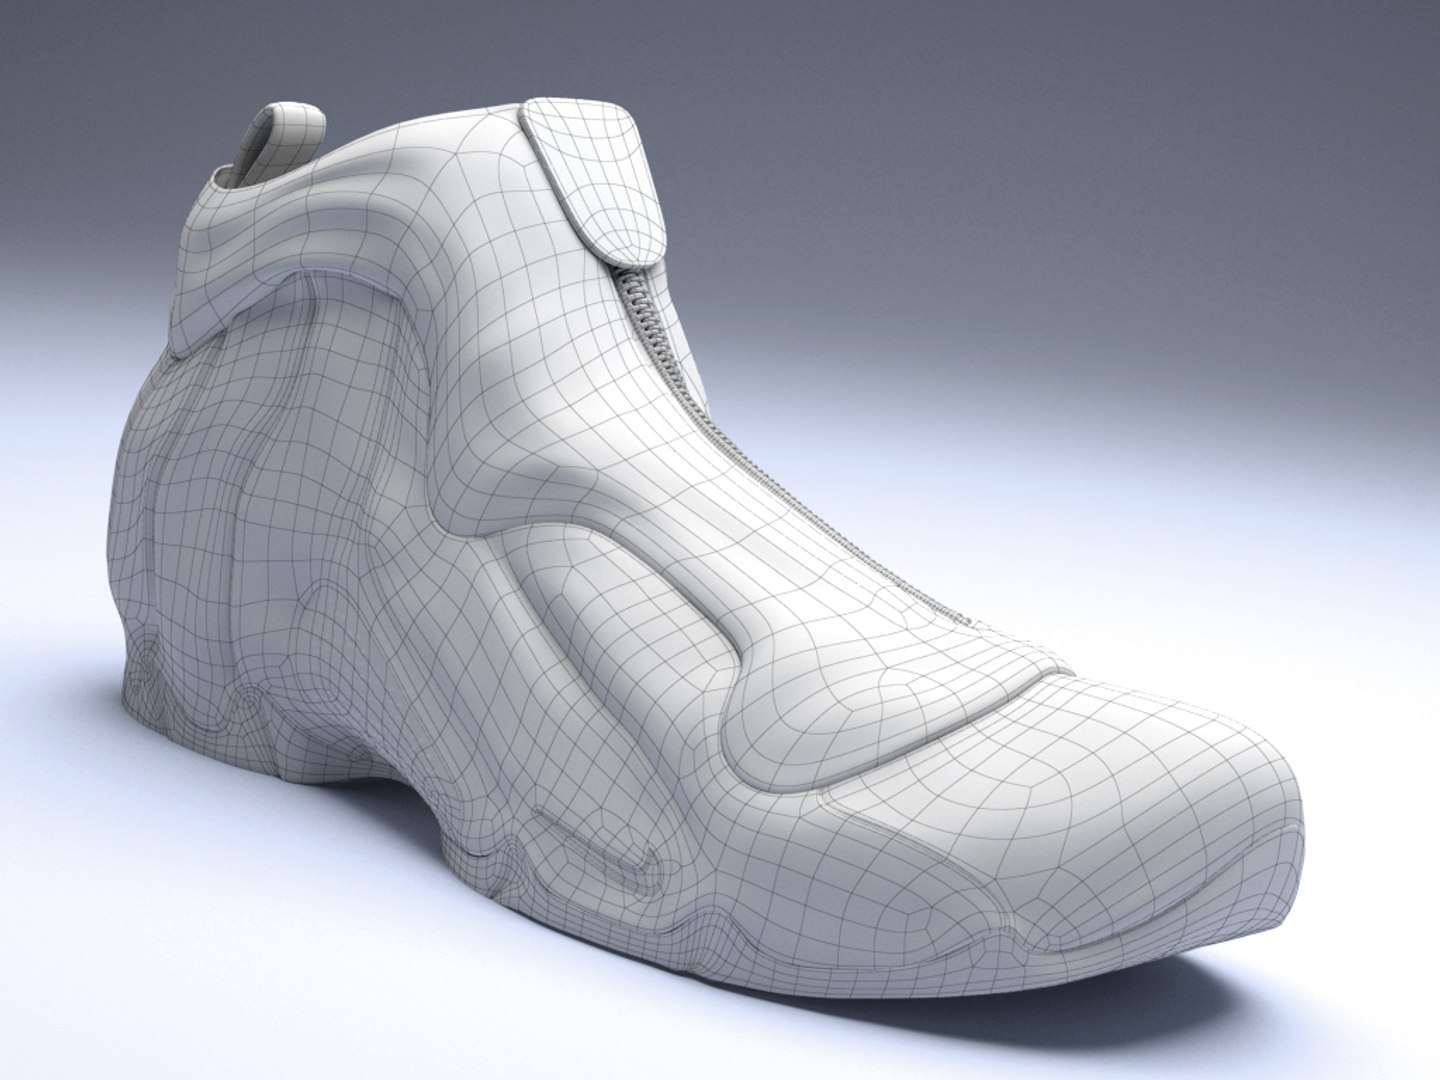 Nike air flightposite 3D model - TurboSquid 1518628